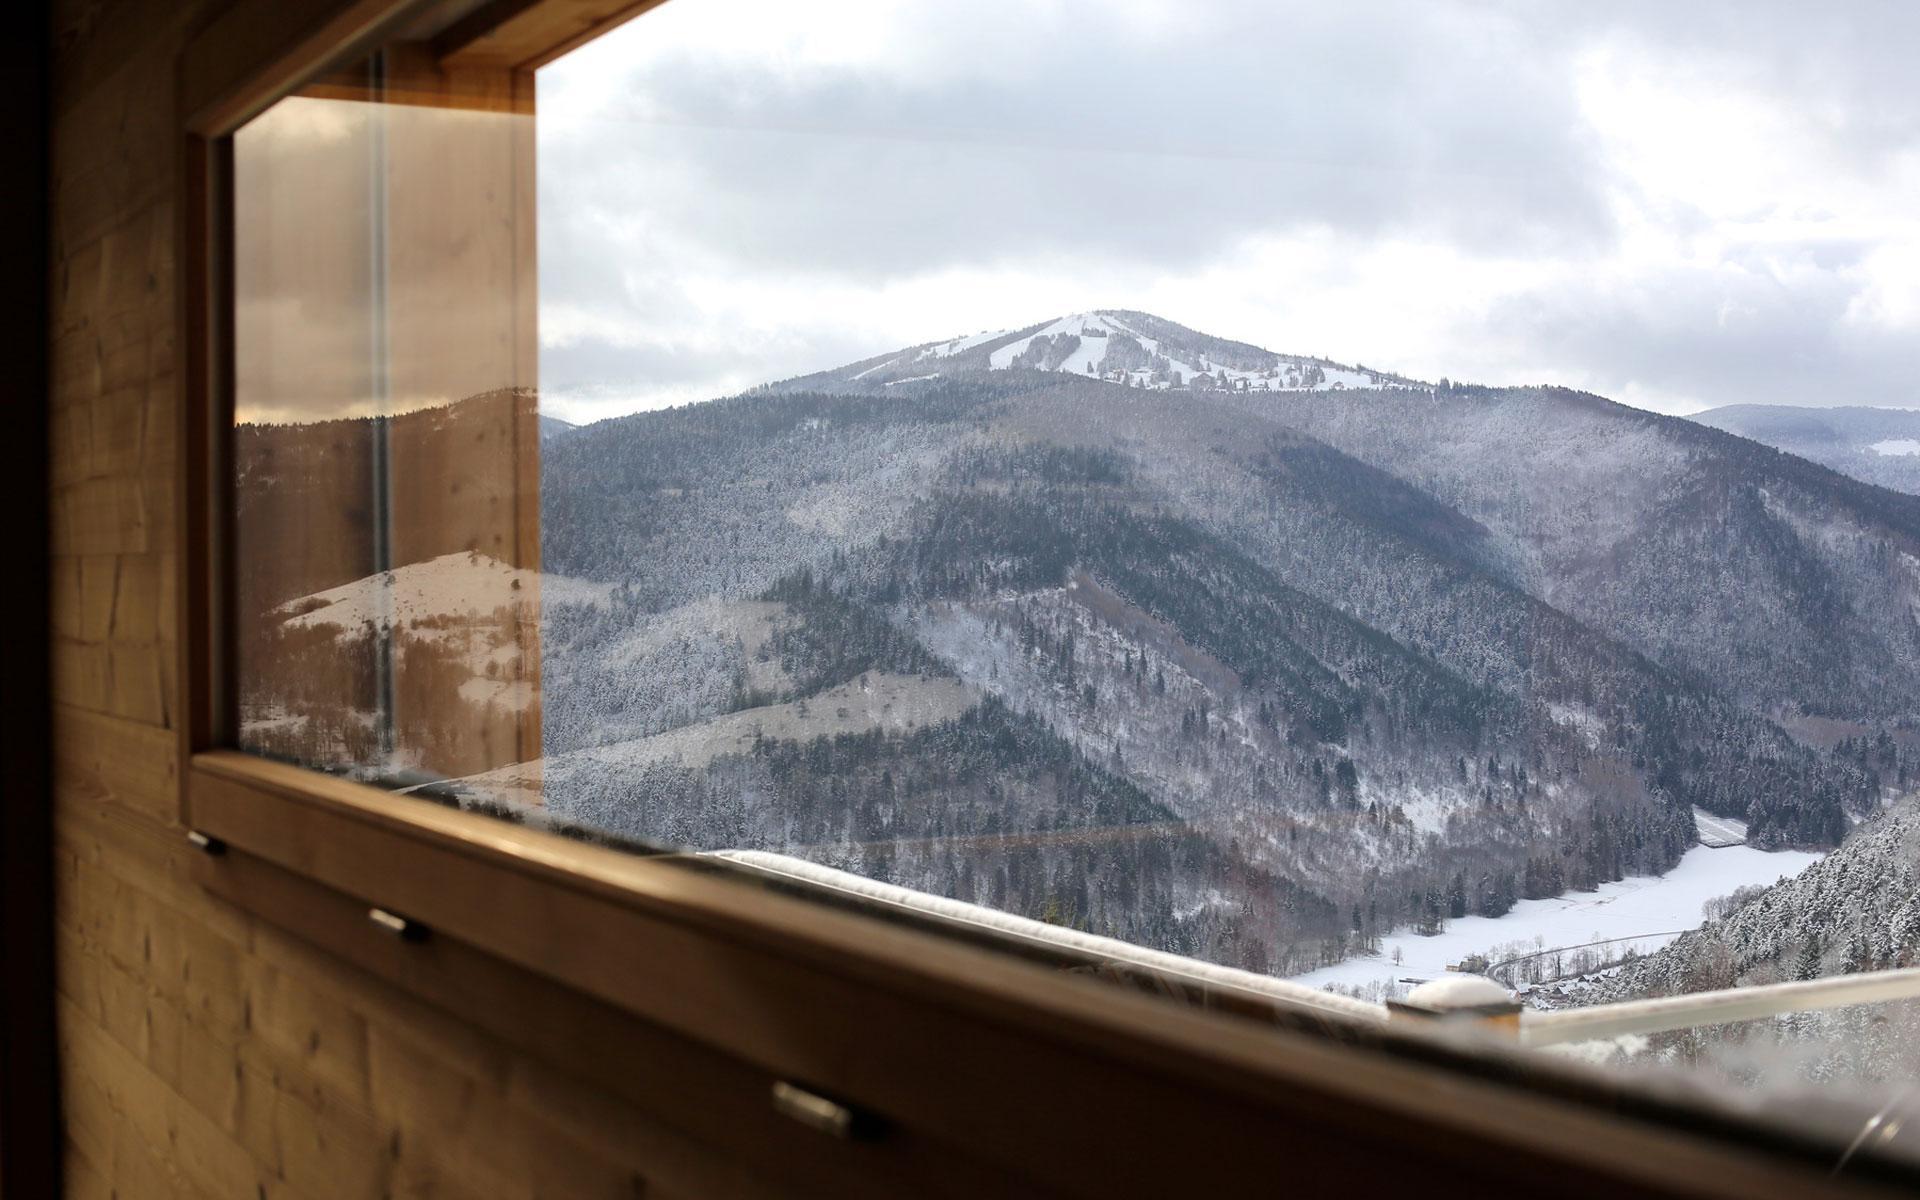 Fenêtre du chalet donnant sur les montagnes enneigées des Vosges d'Alsace.